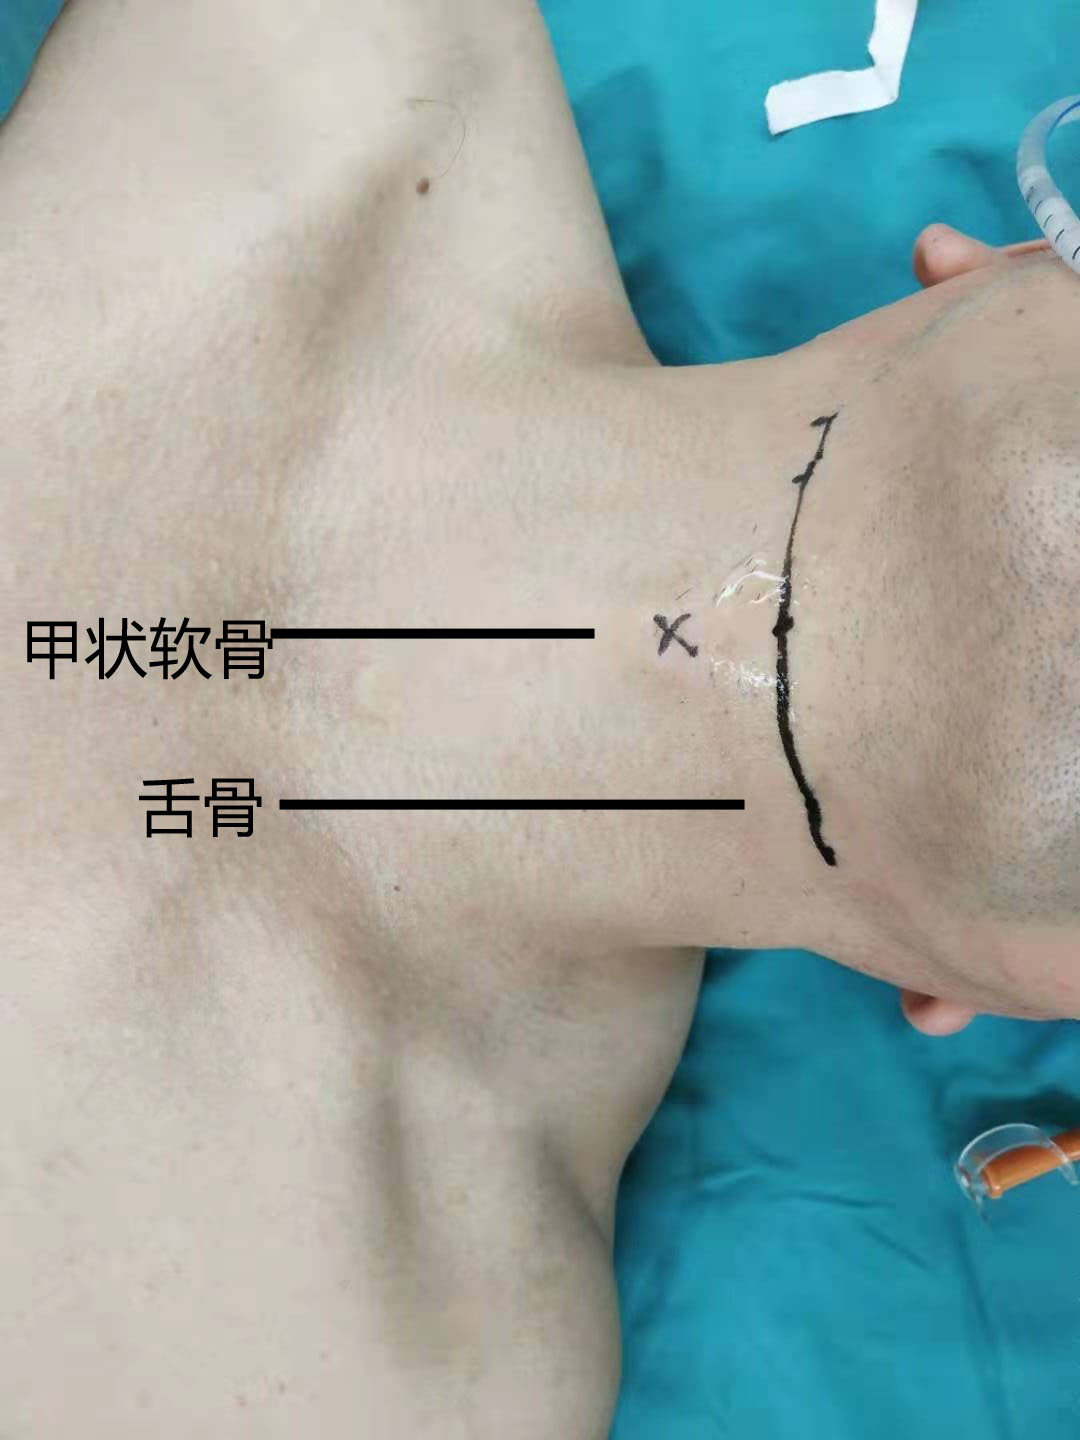 环甲膜穿刺的位置图示图片